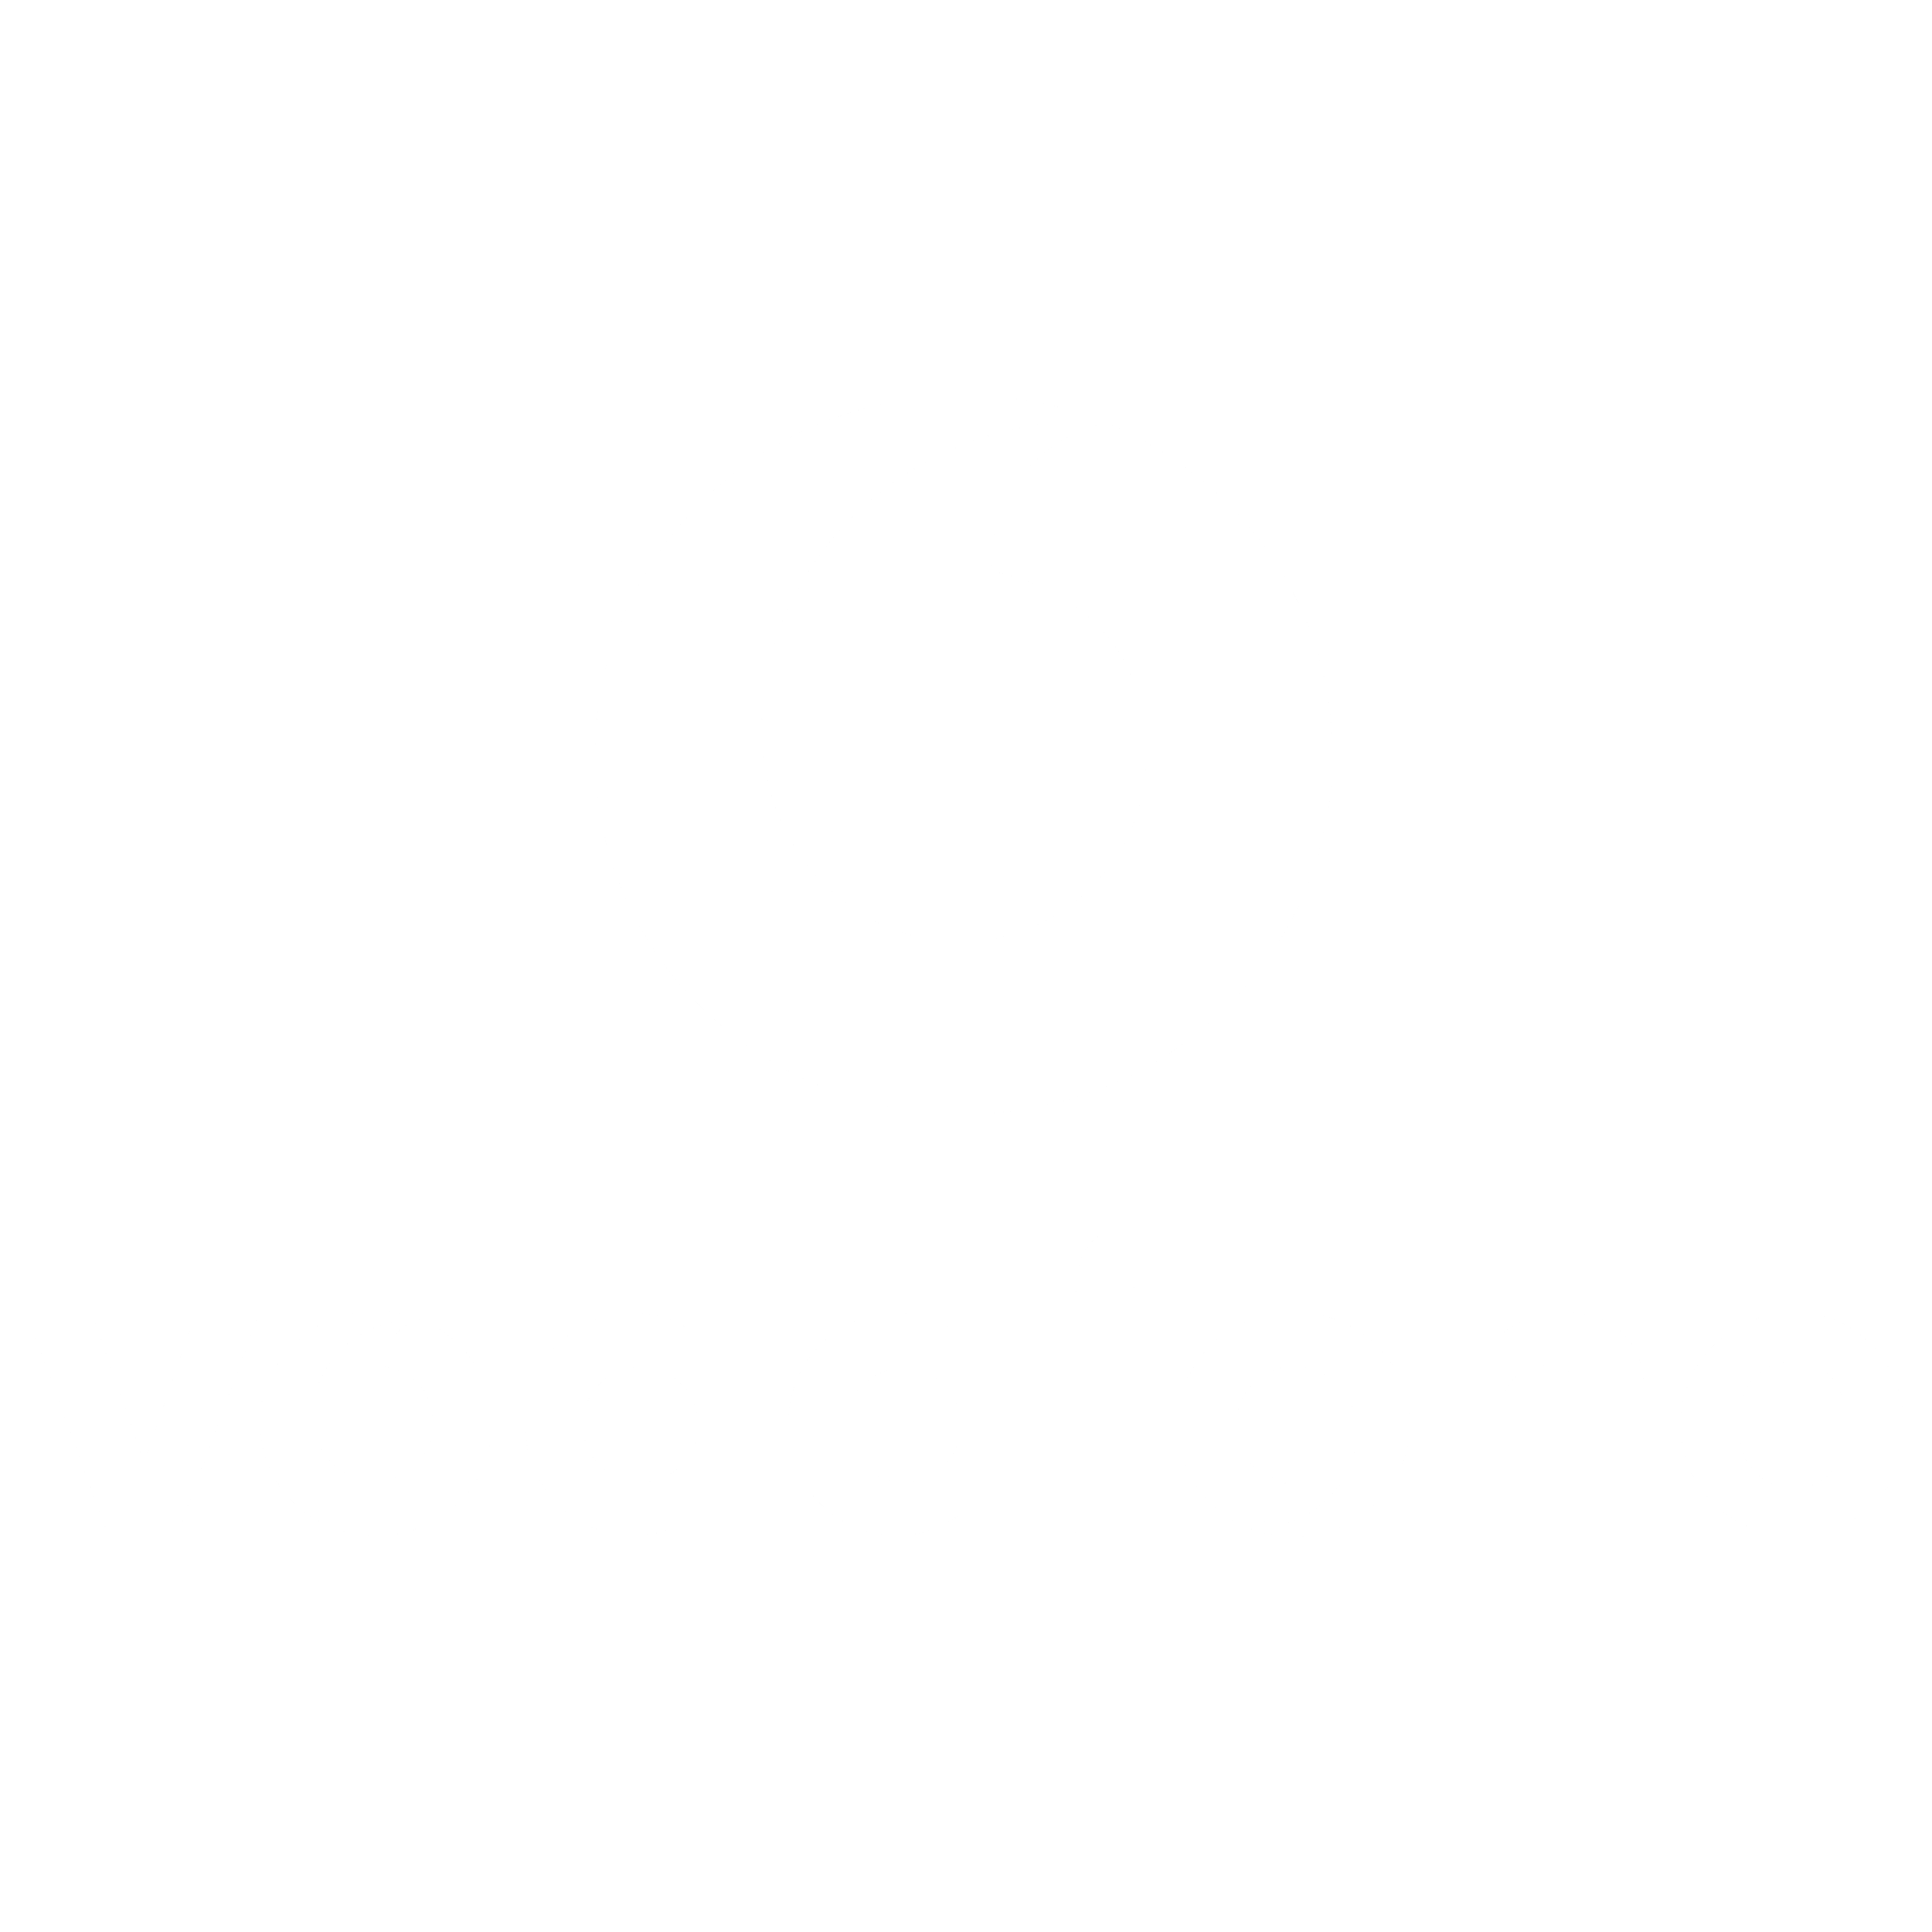 Vodafone Logo Png Transparent